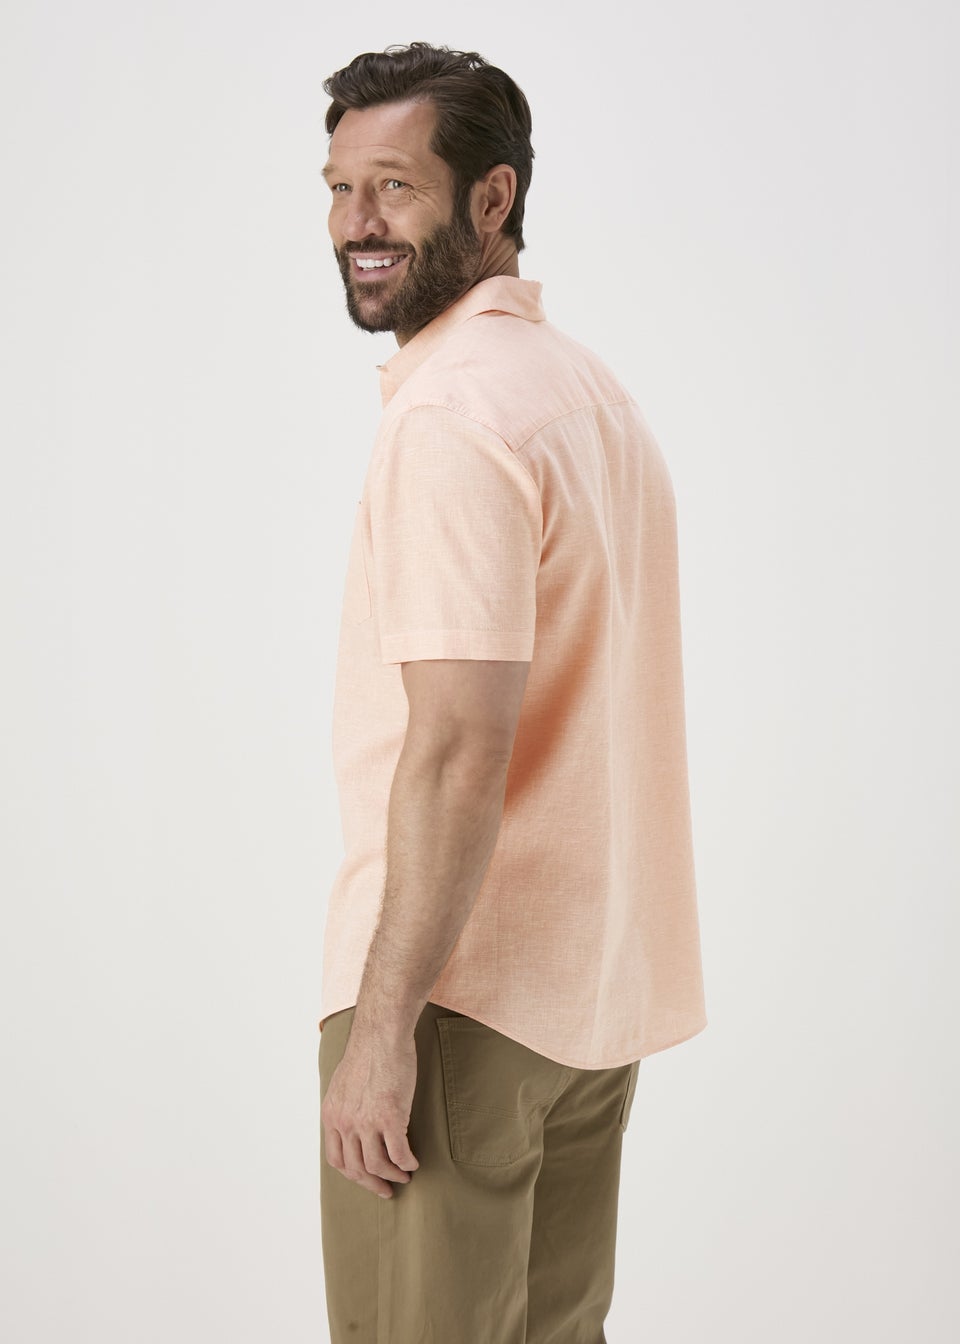 Lincoln Peach Linen Shirt